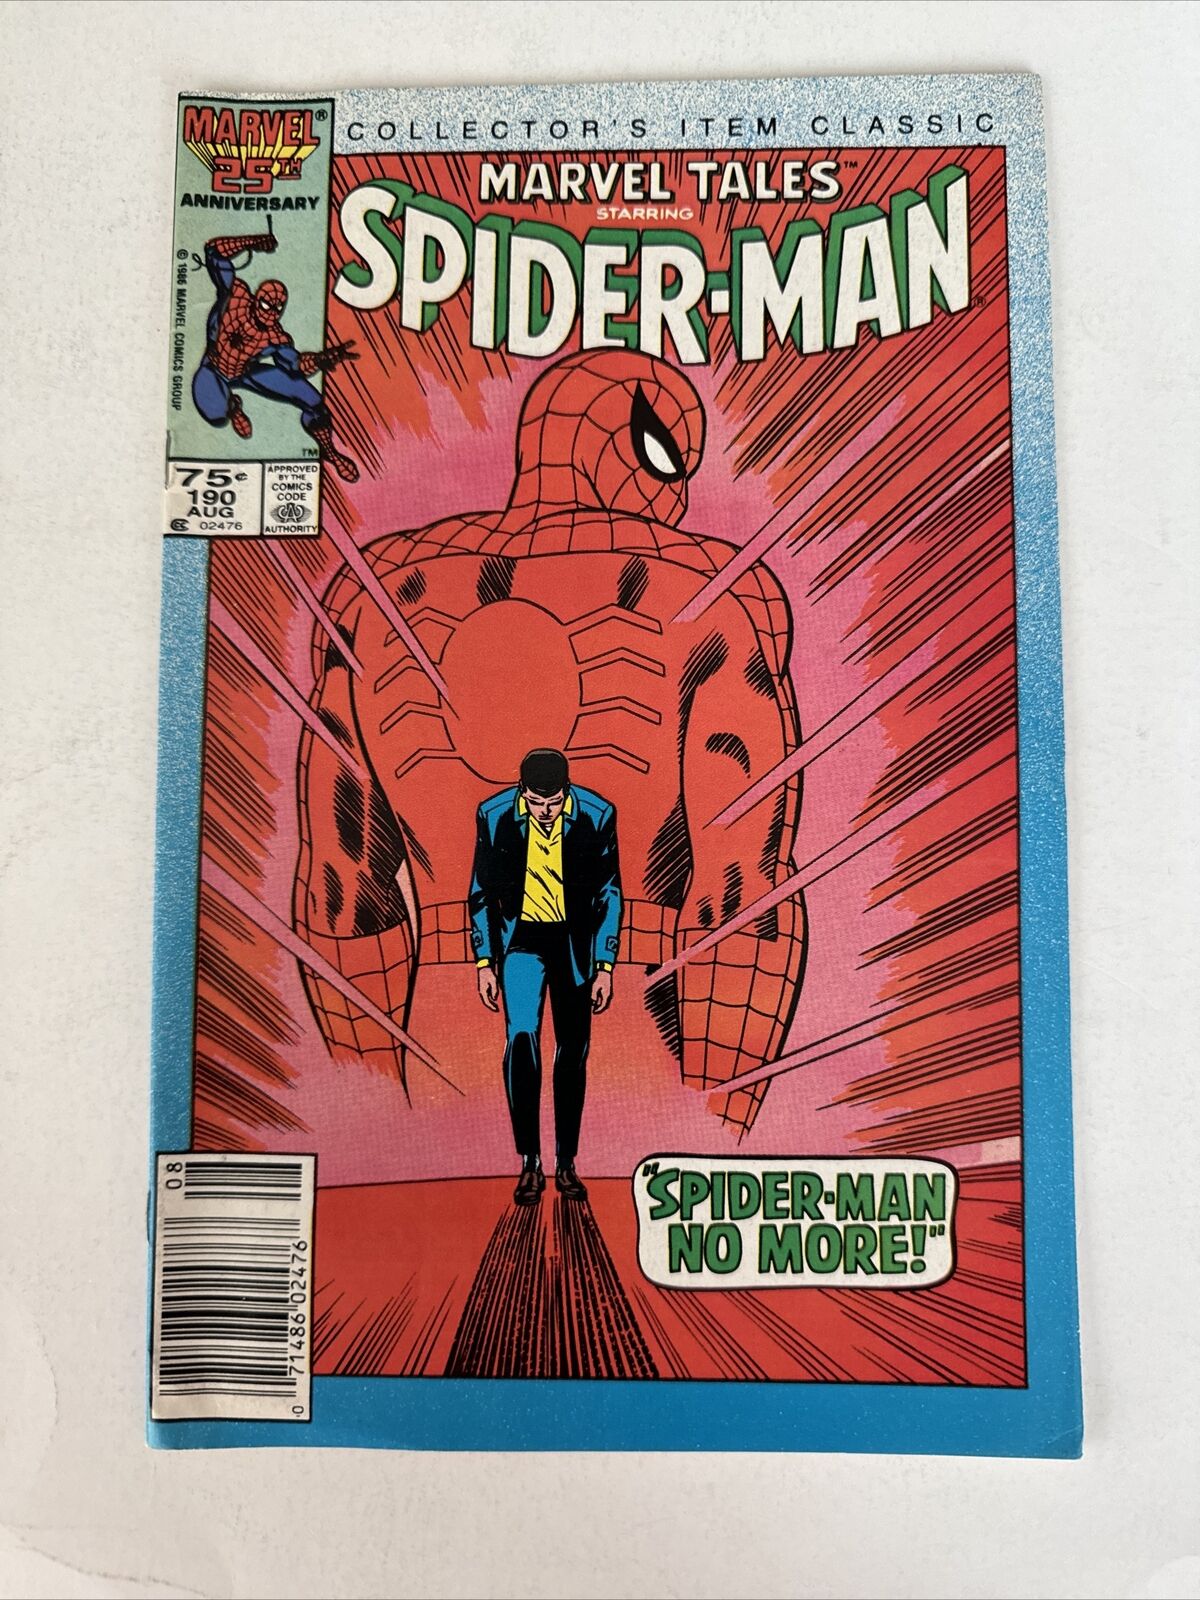 Marvel Tales #190  1986